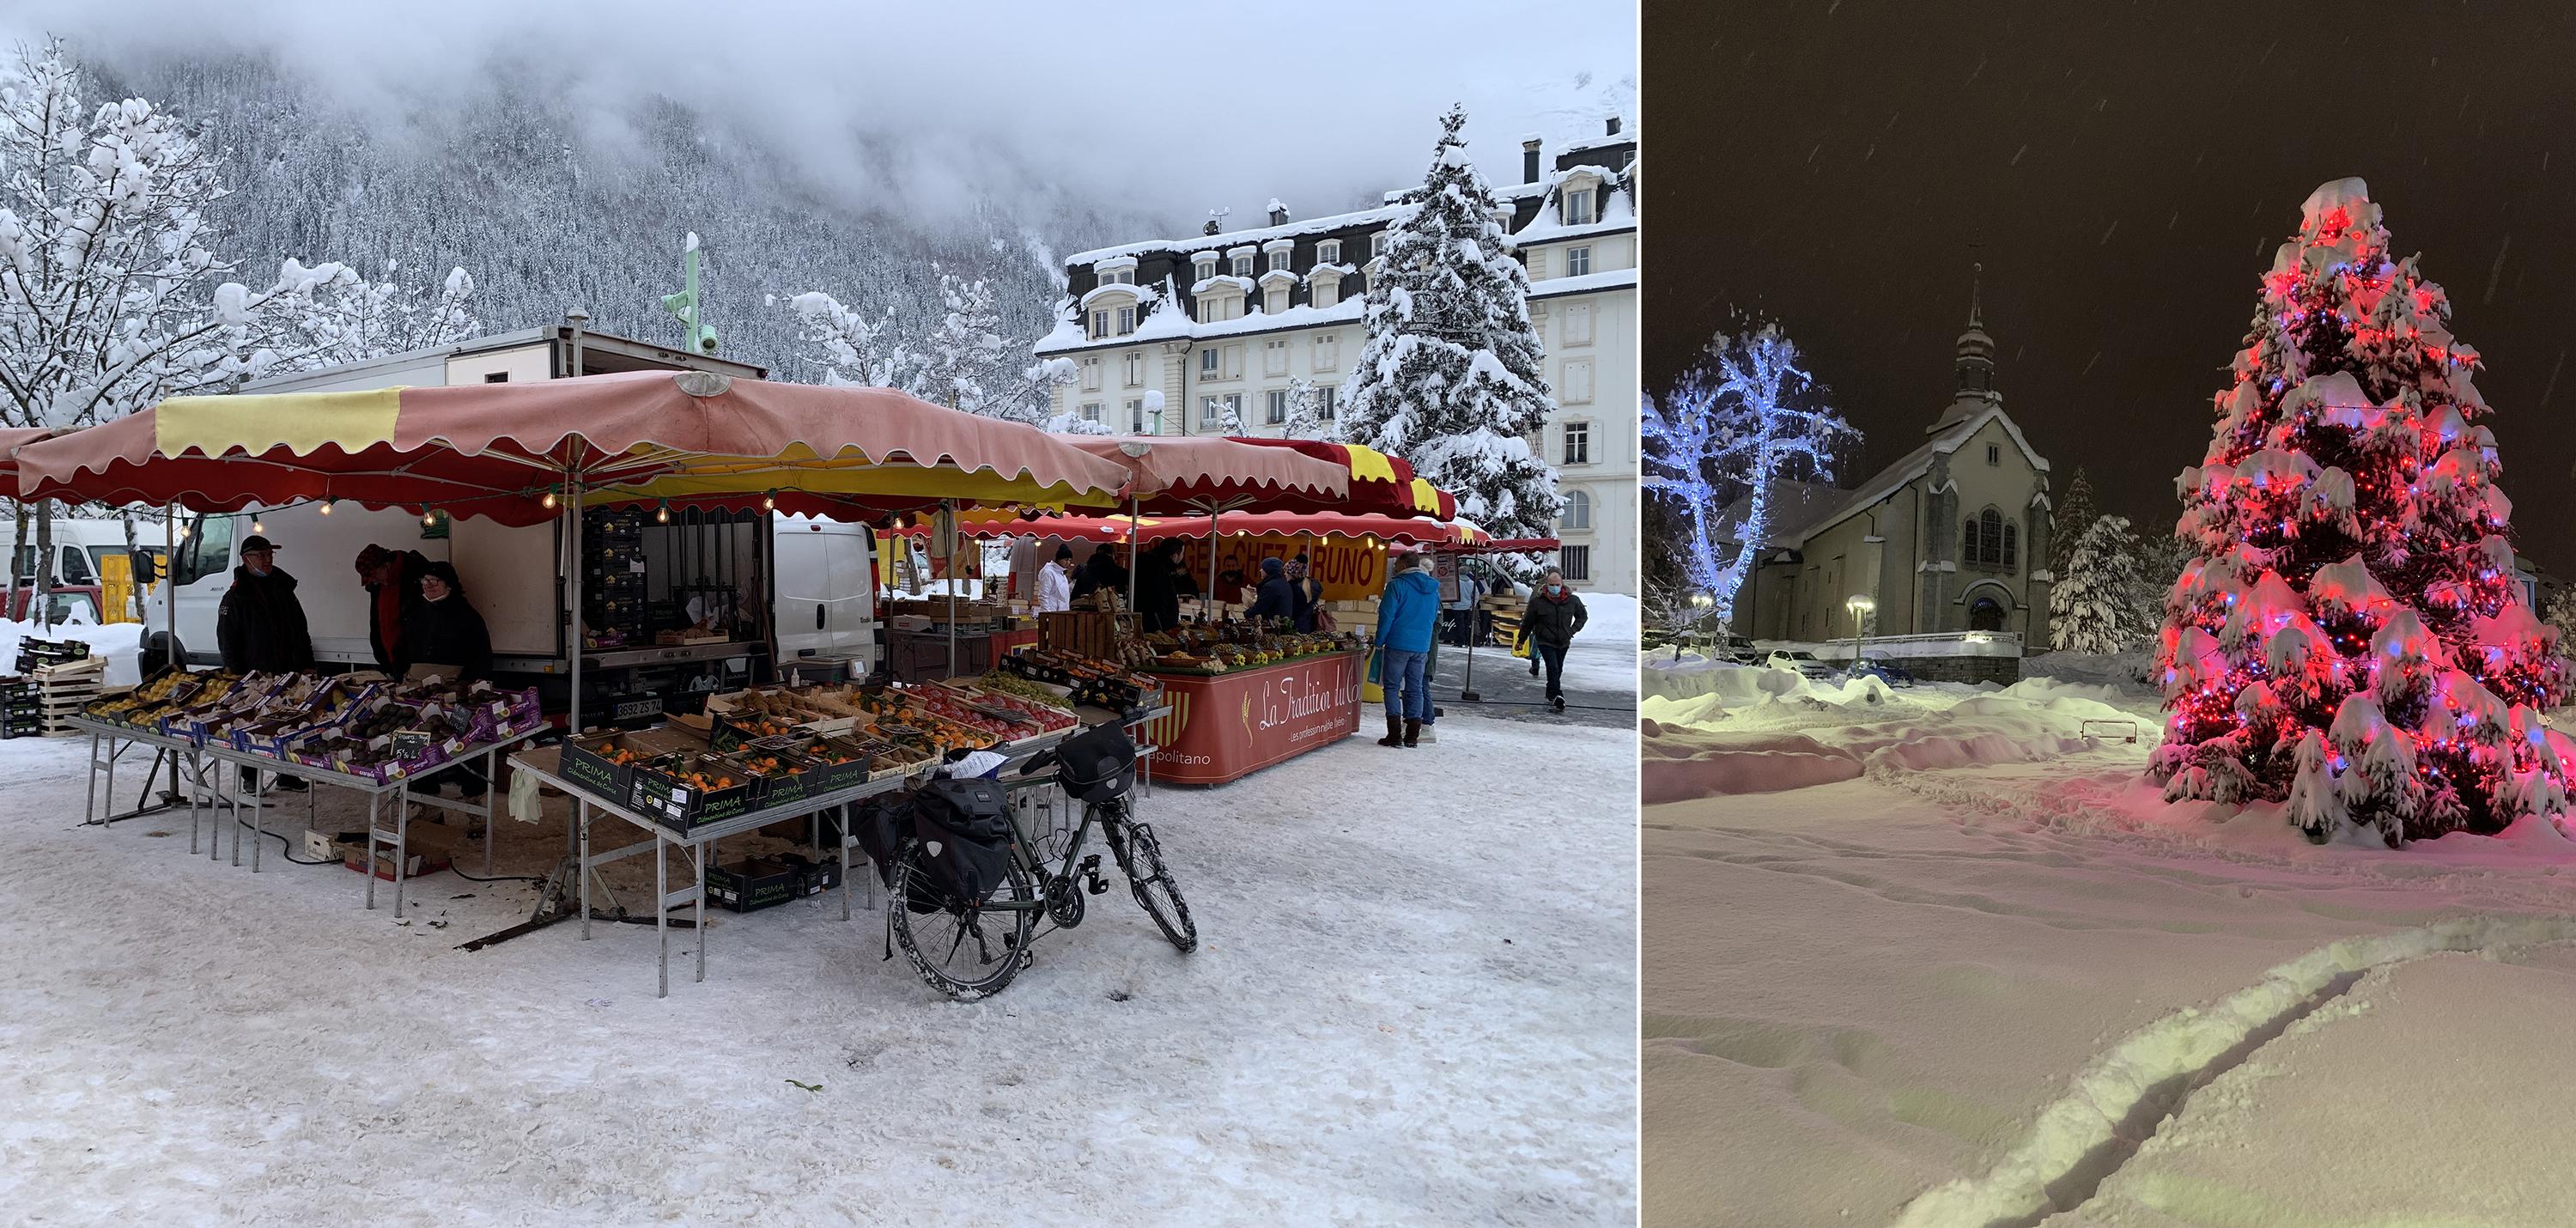 Links: elke zaterdagochtend is het hier markt. Rechts: de kerstboom op het kerkplein maakt Chamonix extra sprookjesachtig tijdens de feestdagen.